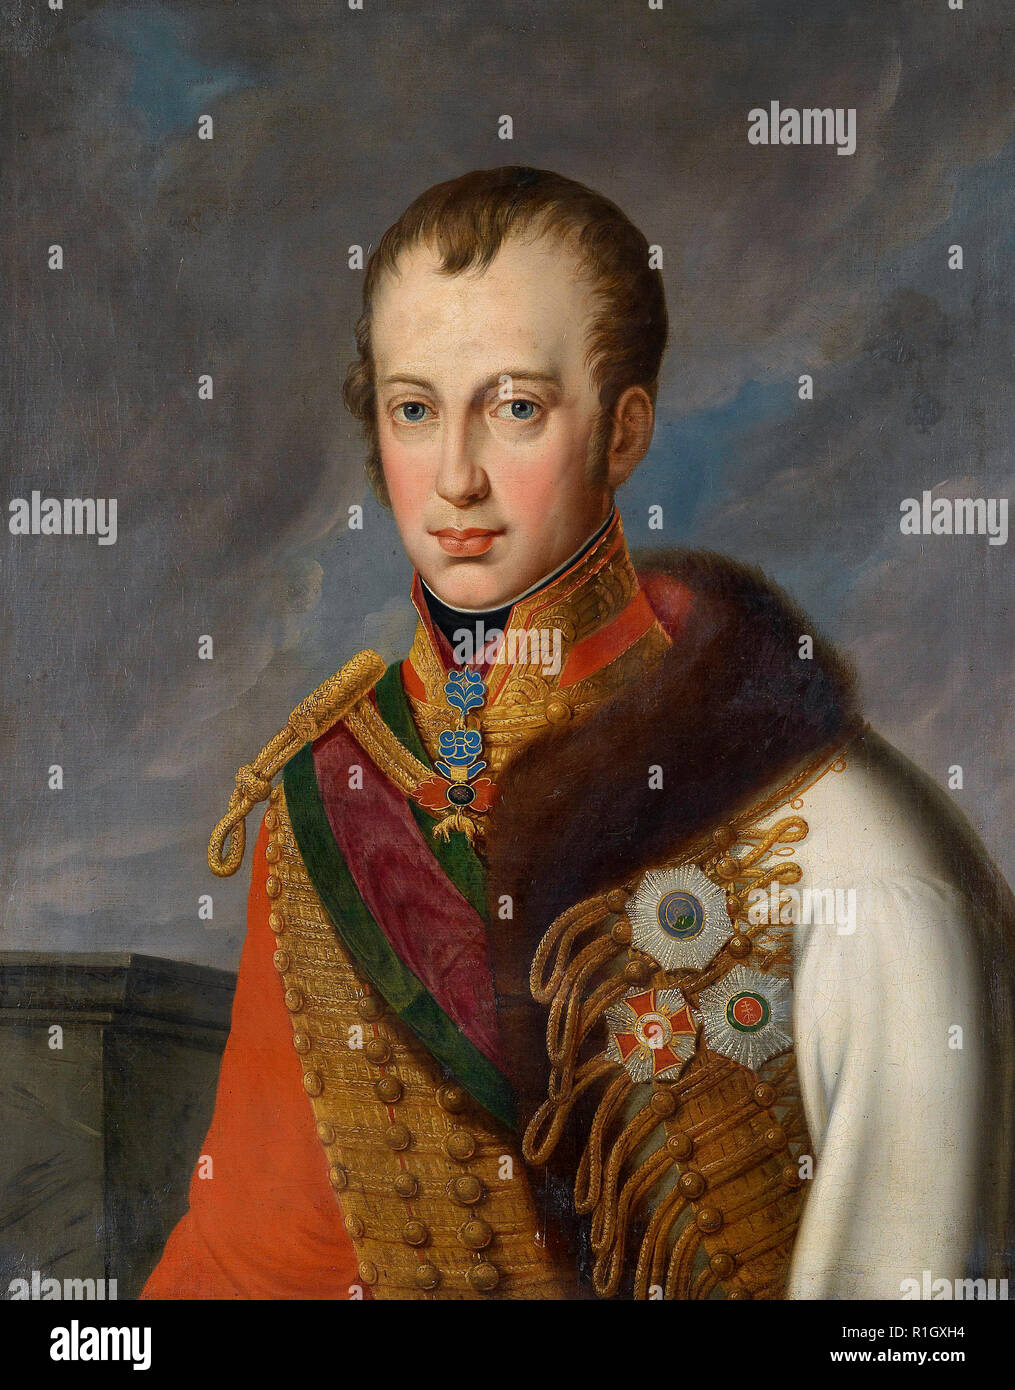 L'empereur Ferdinand I d'Autriche en hongrois avec des décorations, vers 1830 Banque D'Images